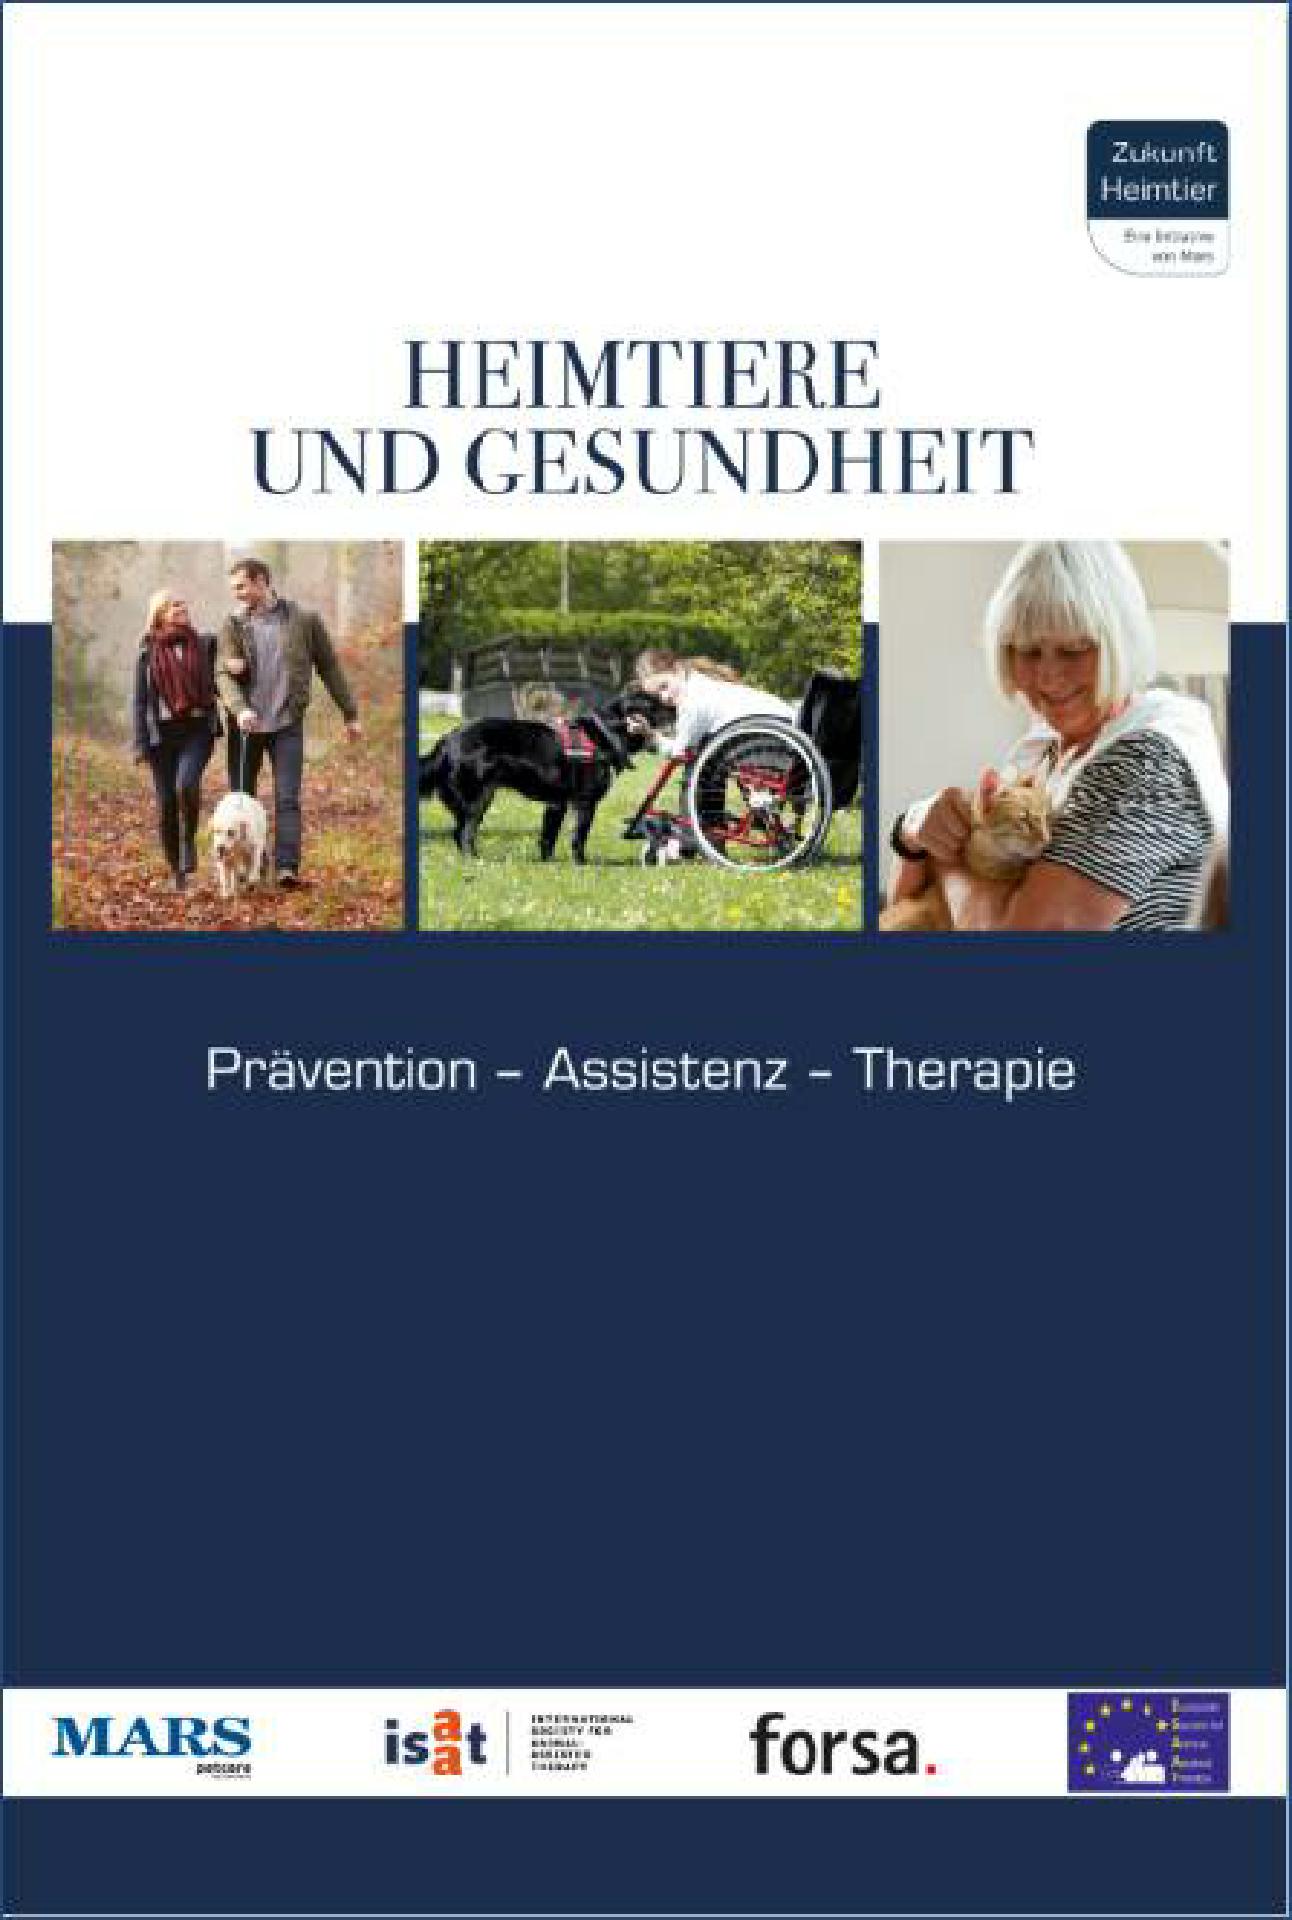 Cover_Heimtiere_und_Gesundheit_01